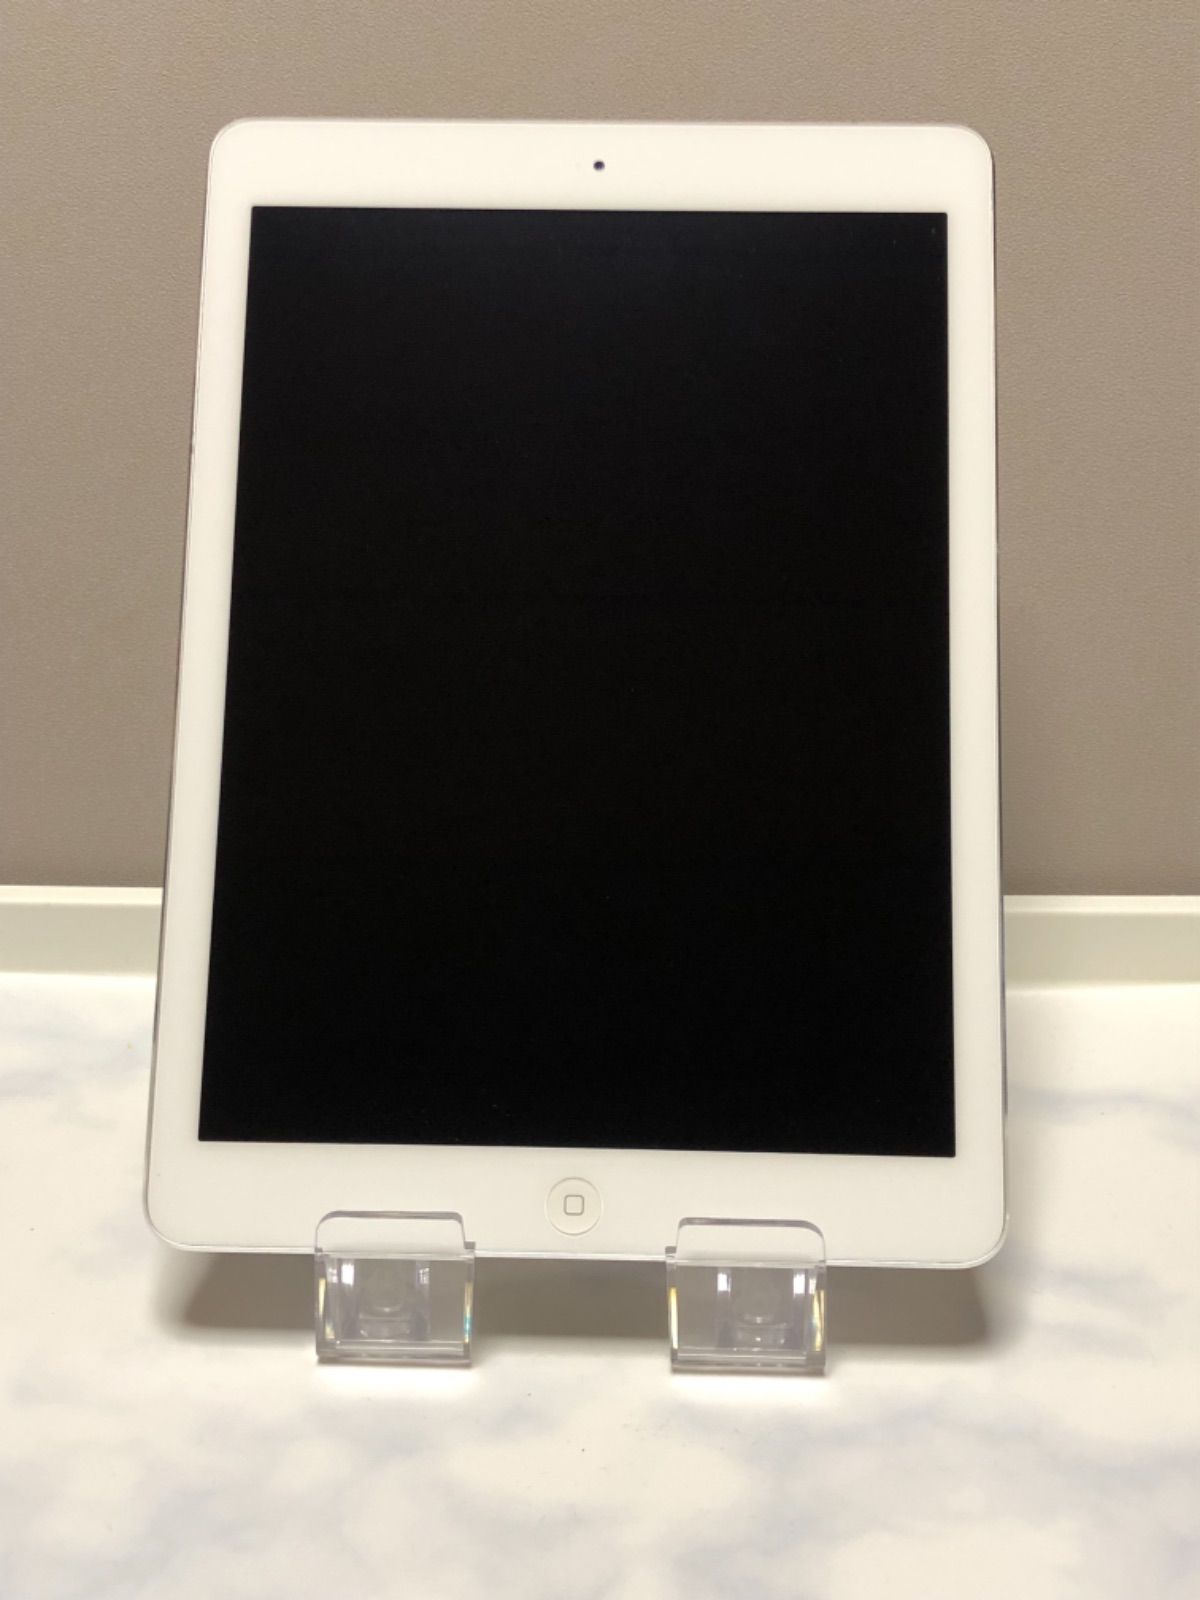 【新品好評】iPad Air 32G シルバー wifiモデル MD789J/A iPad本体